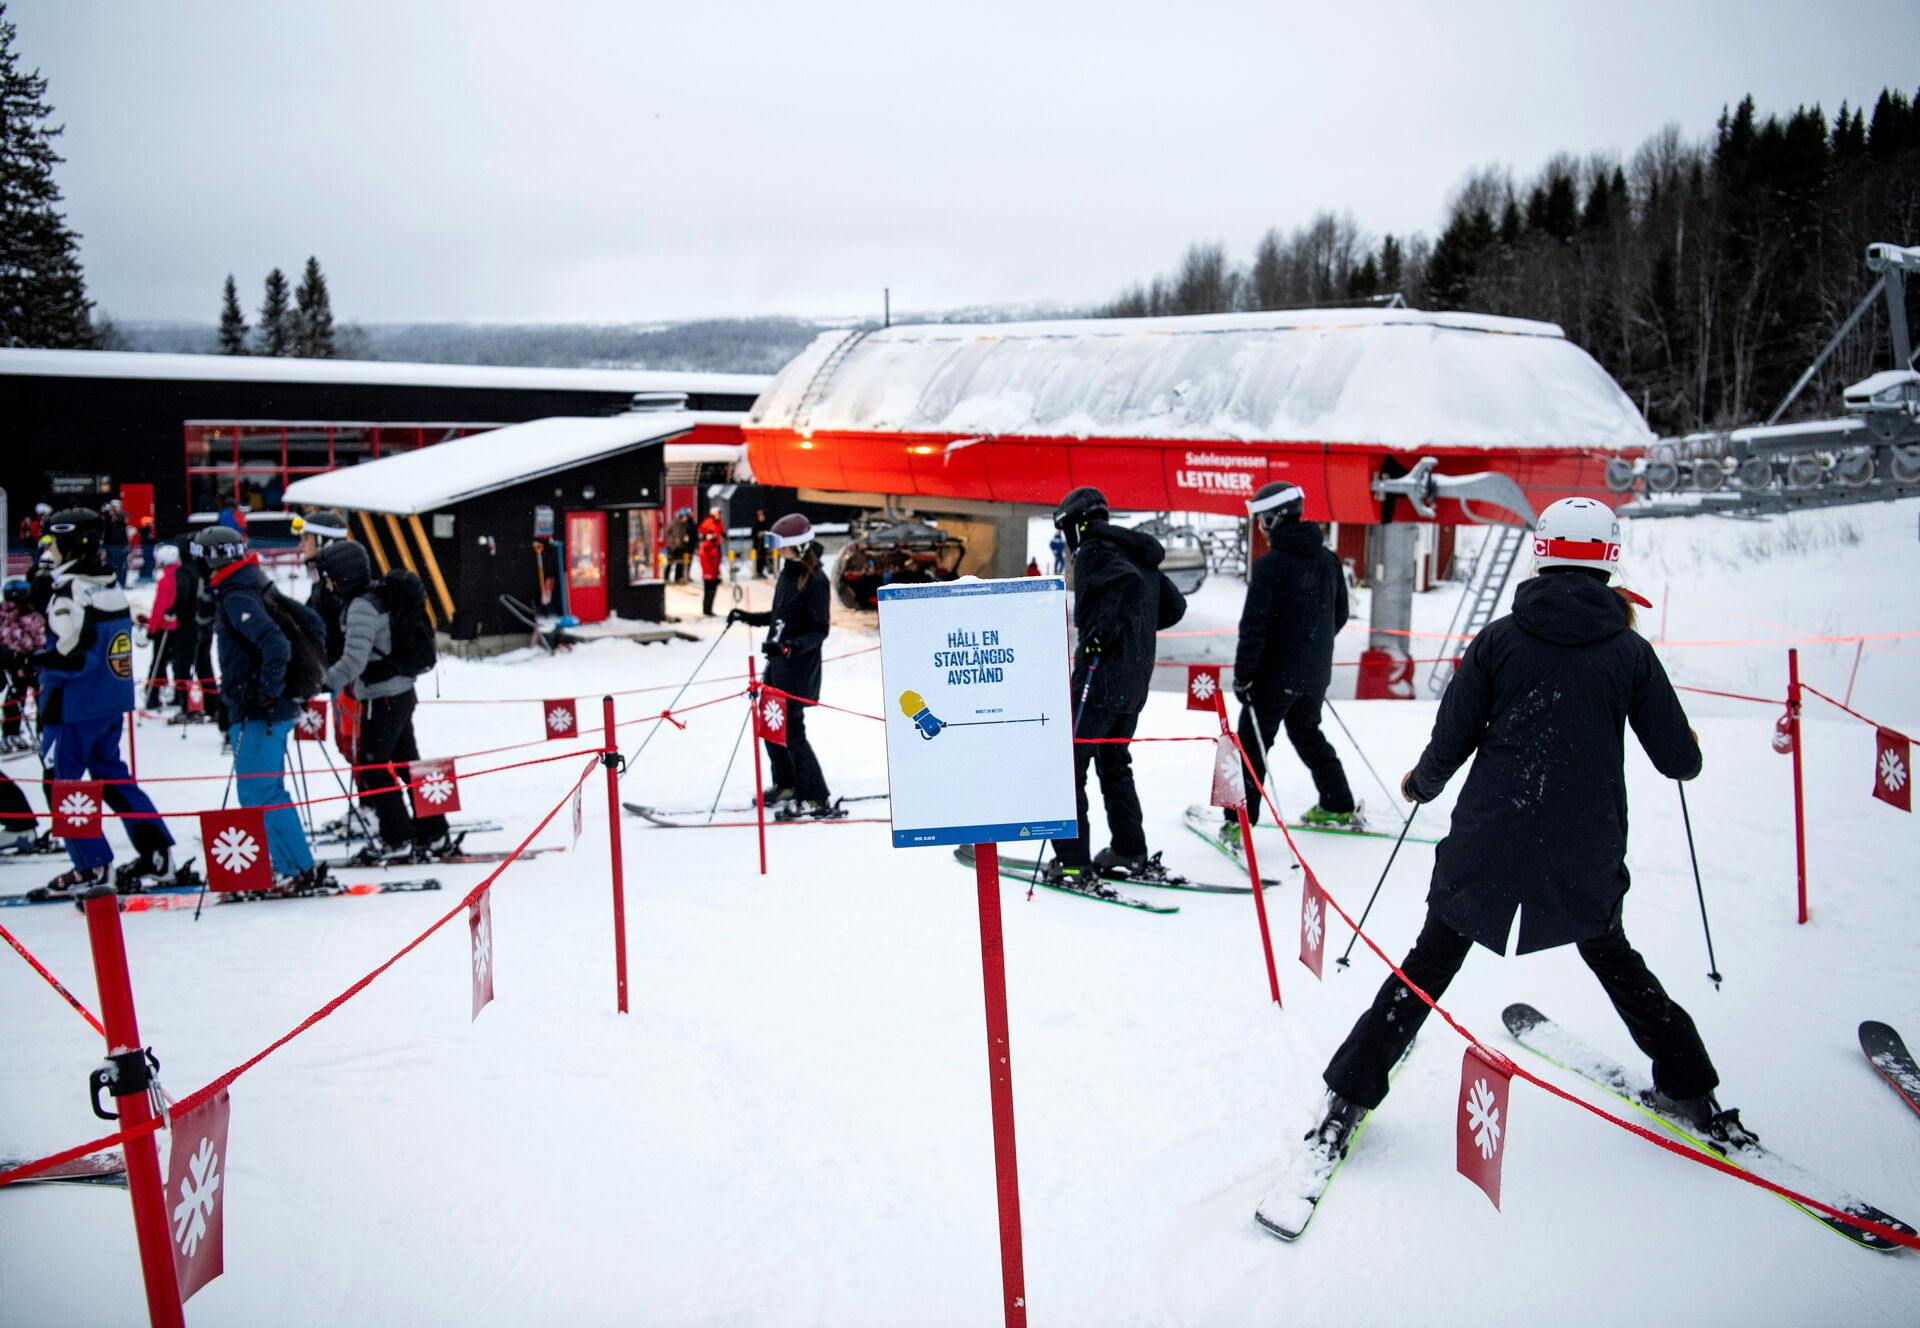 Danske skiturister står i kø til at komme til Sverige, når ellers sneen er klar til dem. For priserne er i bund, fordi den danske krone er så stærk over den meget svage svenske.